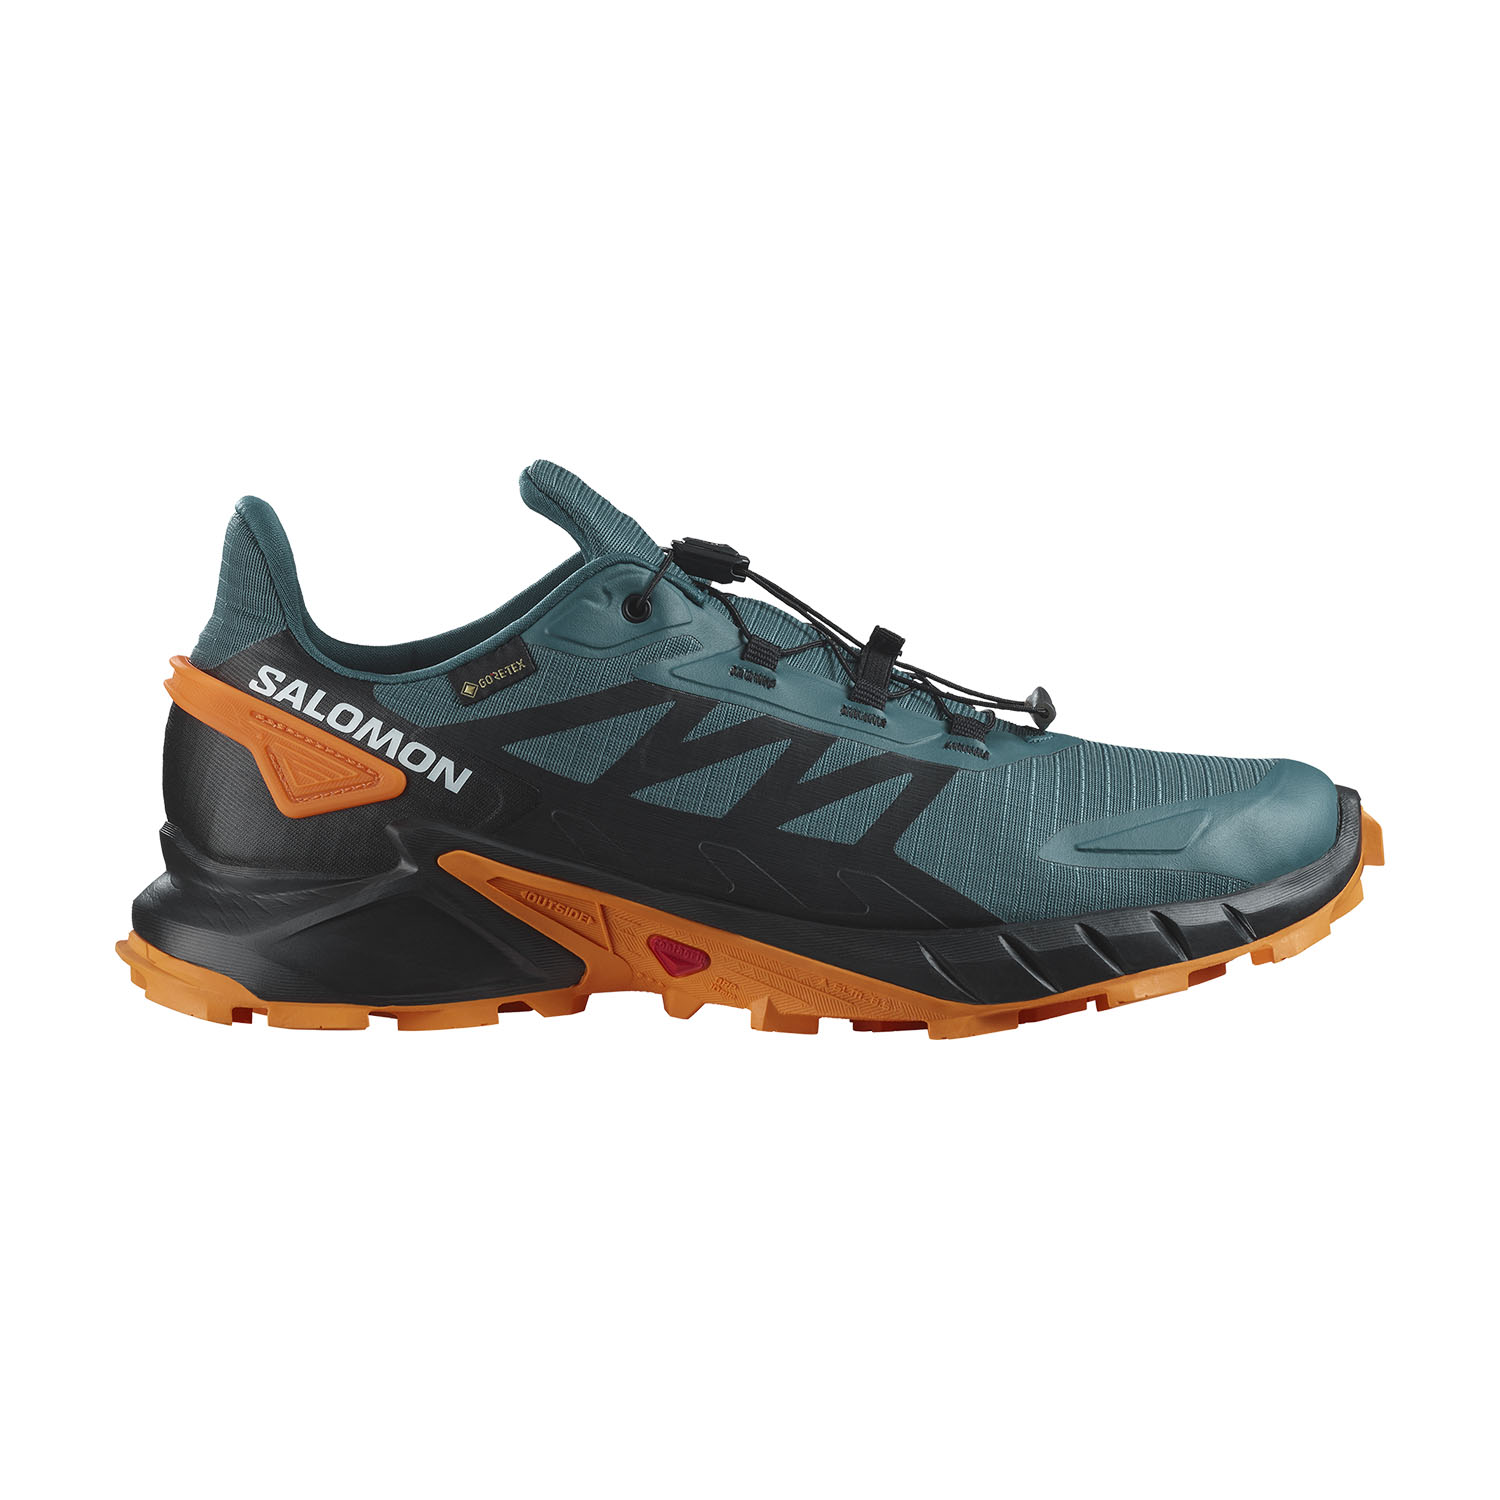 Whitney Rektangel Signal Salomon Supercross 4 GTX Men's Trail Running Shoes - Stargazer